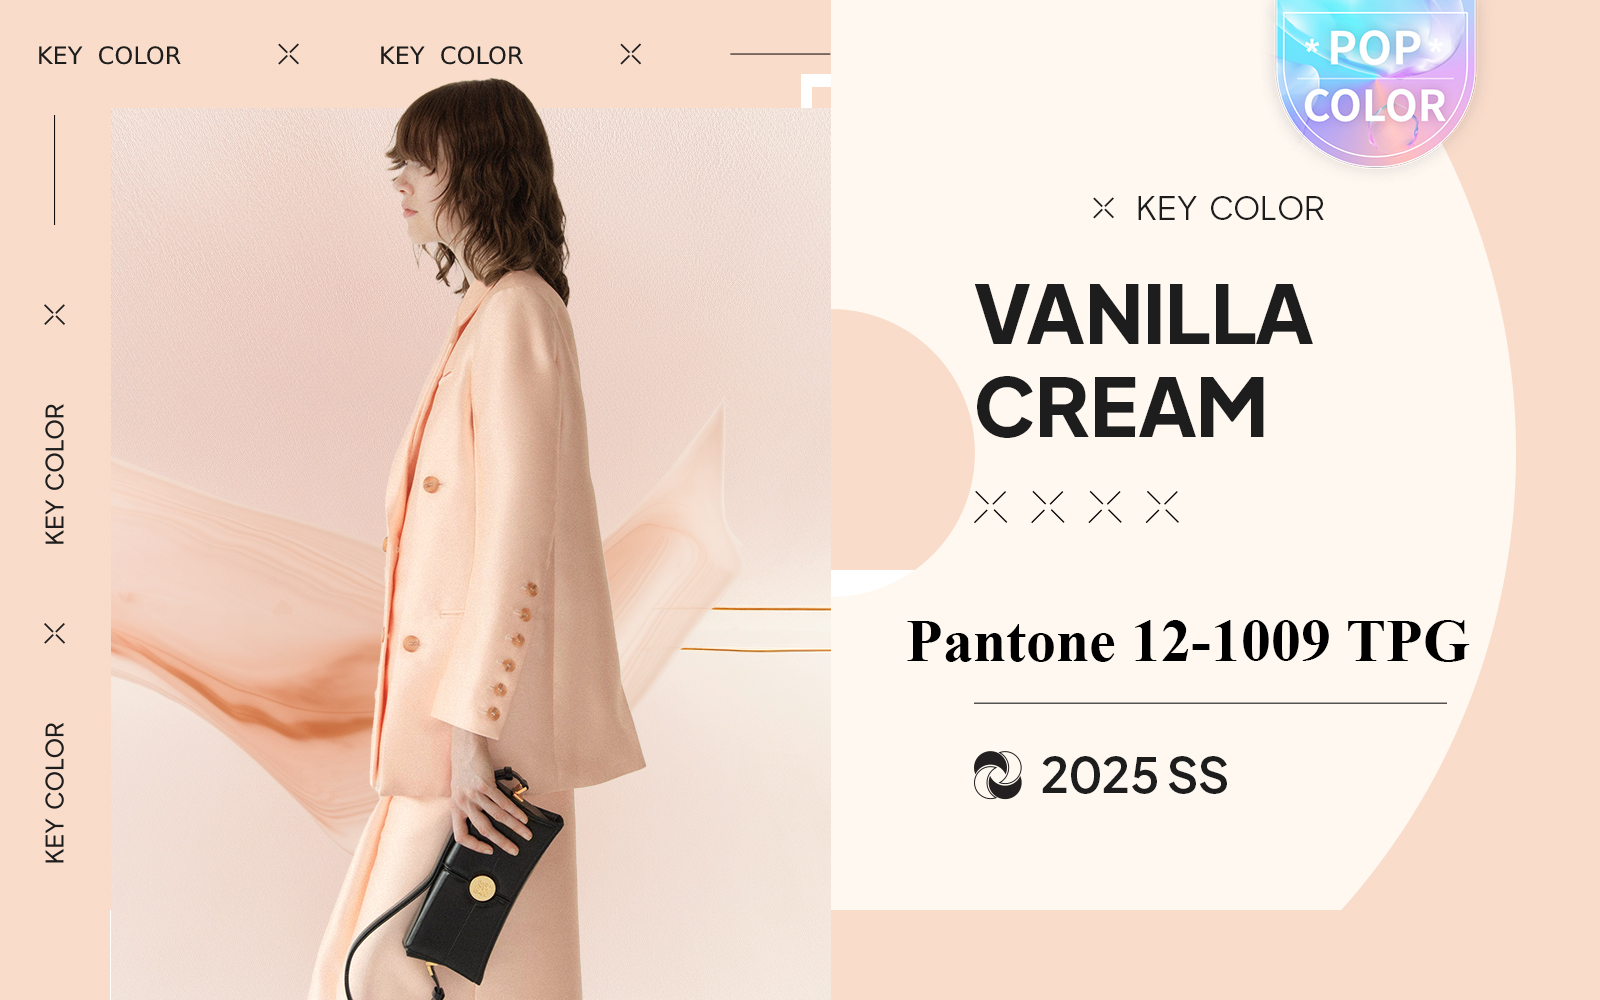 Vanilla Cream -- The Color Trend for Womenswear